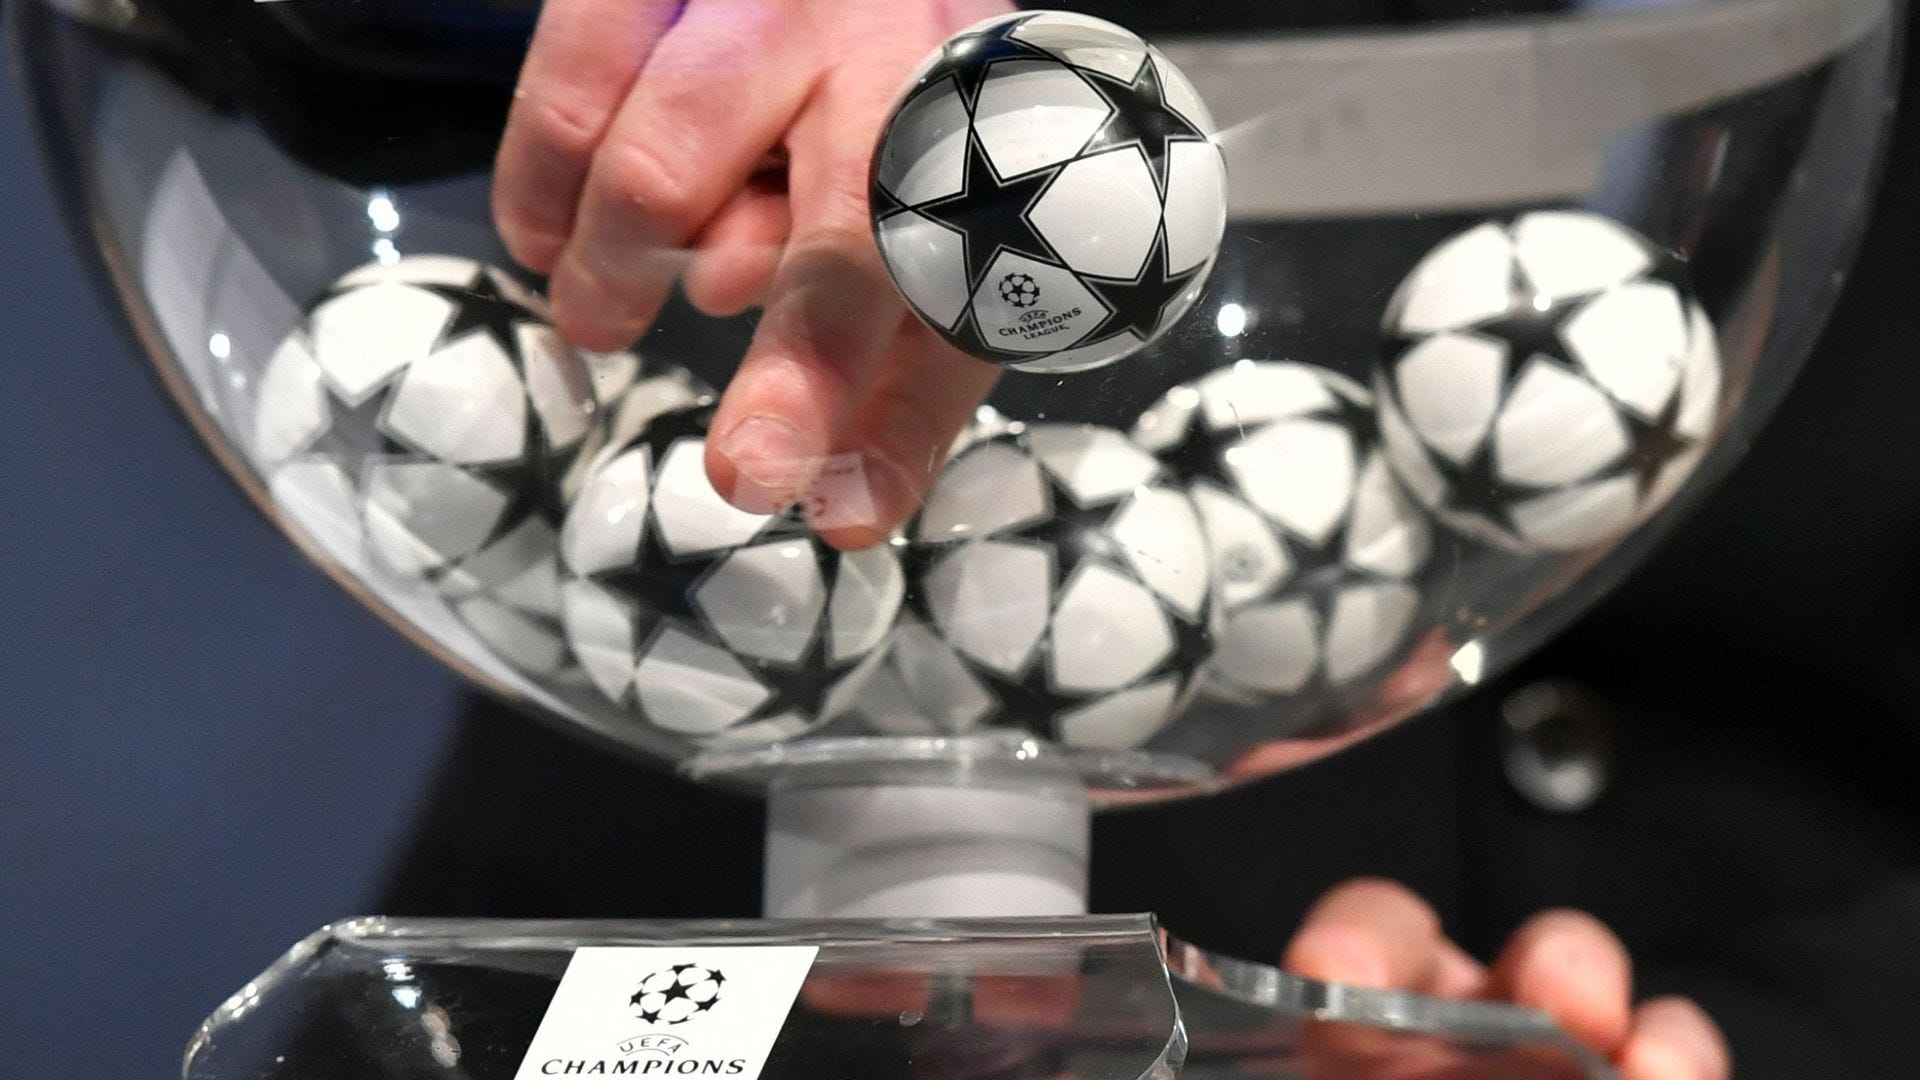 Oitavas de final da Champions League 2022/23; Os jogos, onde assistir e  como apostar - Champions League - Br - Futboo.com